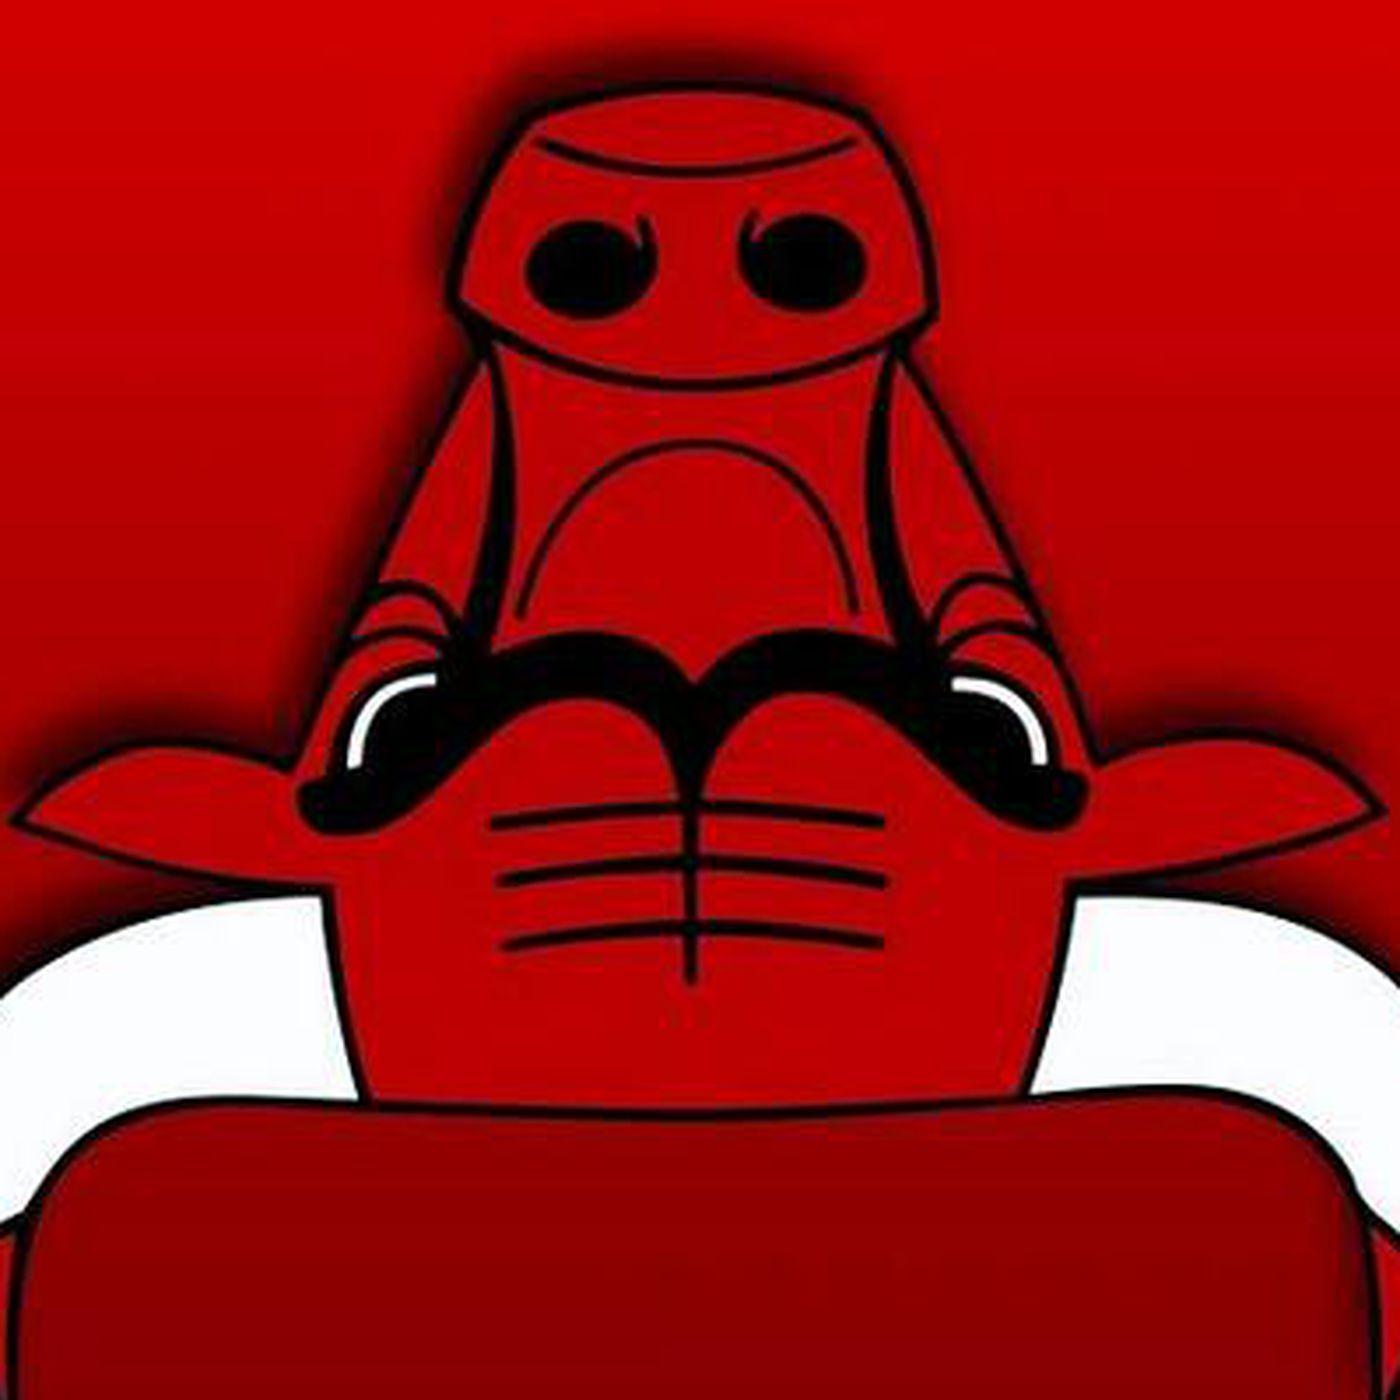 Bulls Logo - Turn the Bulls logo upside down, get a robot reading a book ...